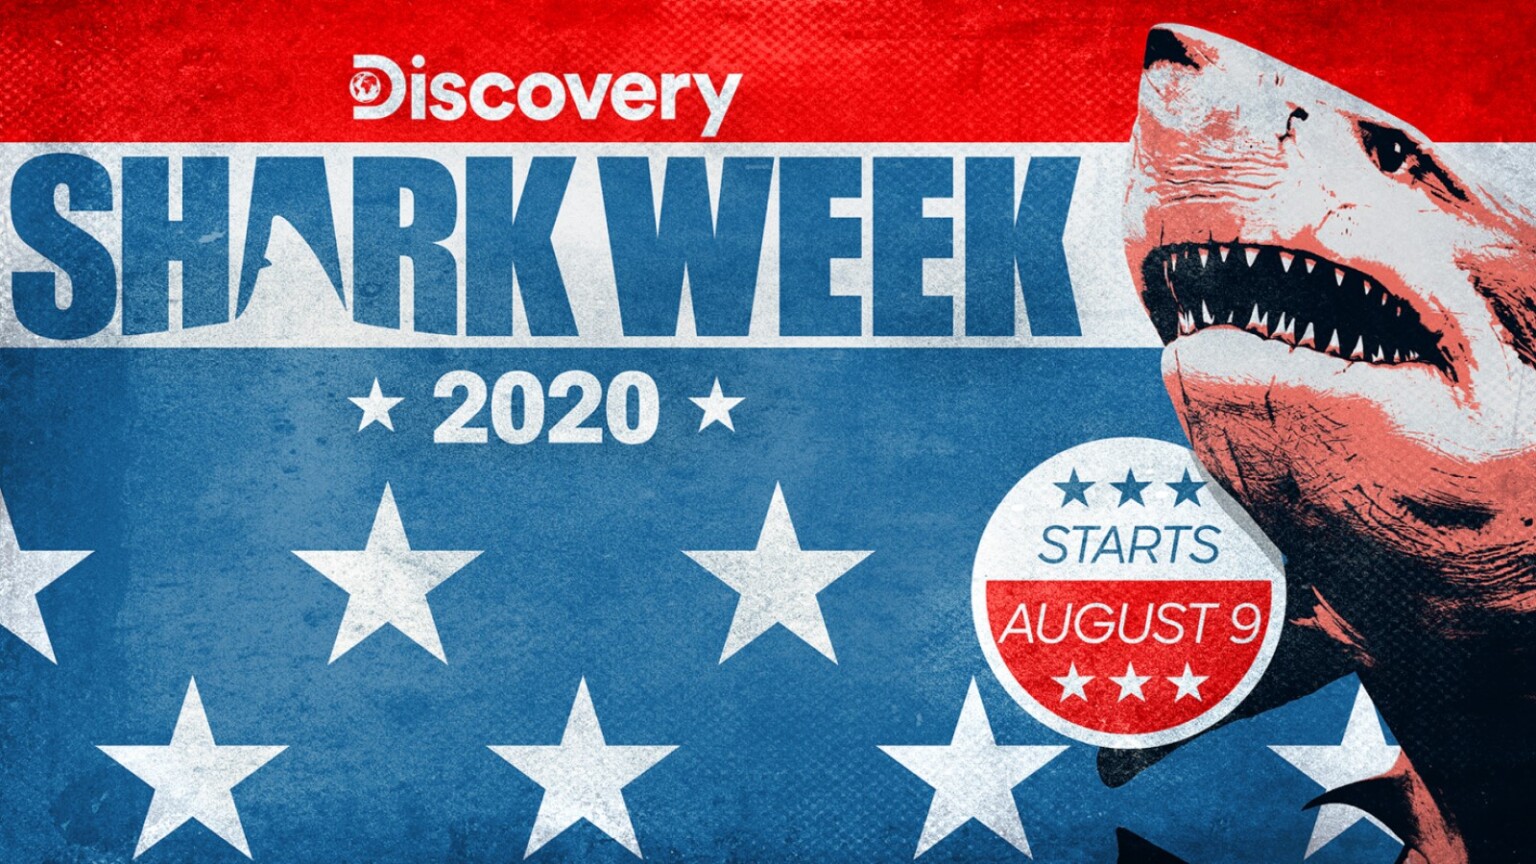 Shark Week 2020 Live Stream: Schedule, Dates, Channel, How to Watch - TechNadu